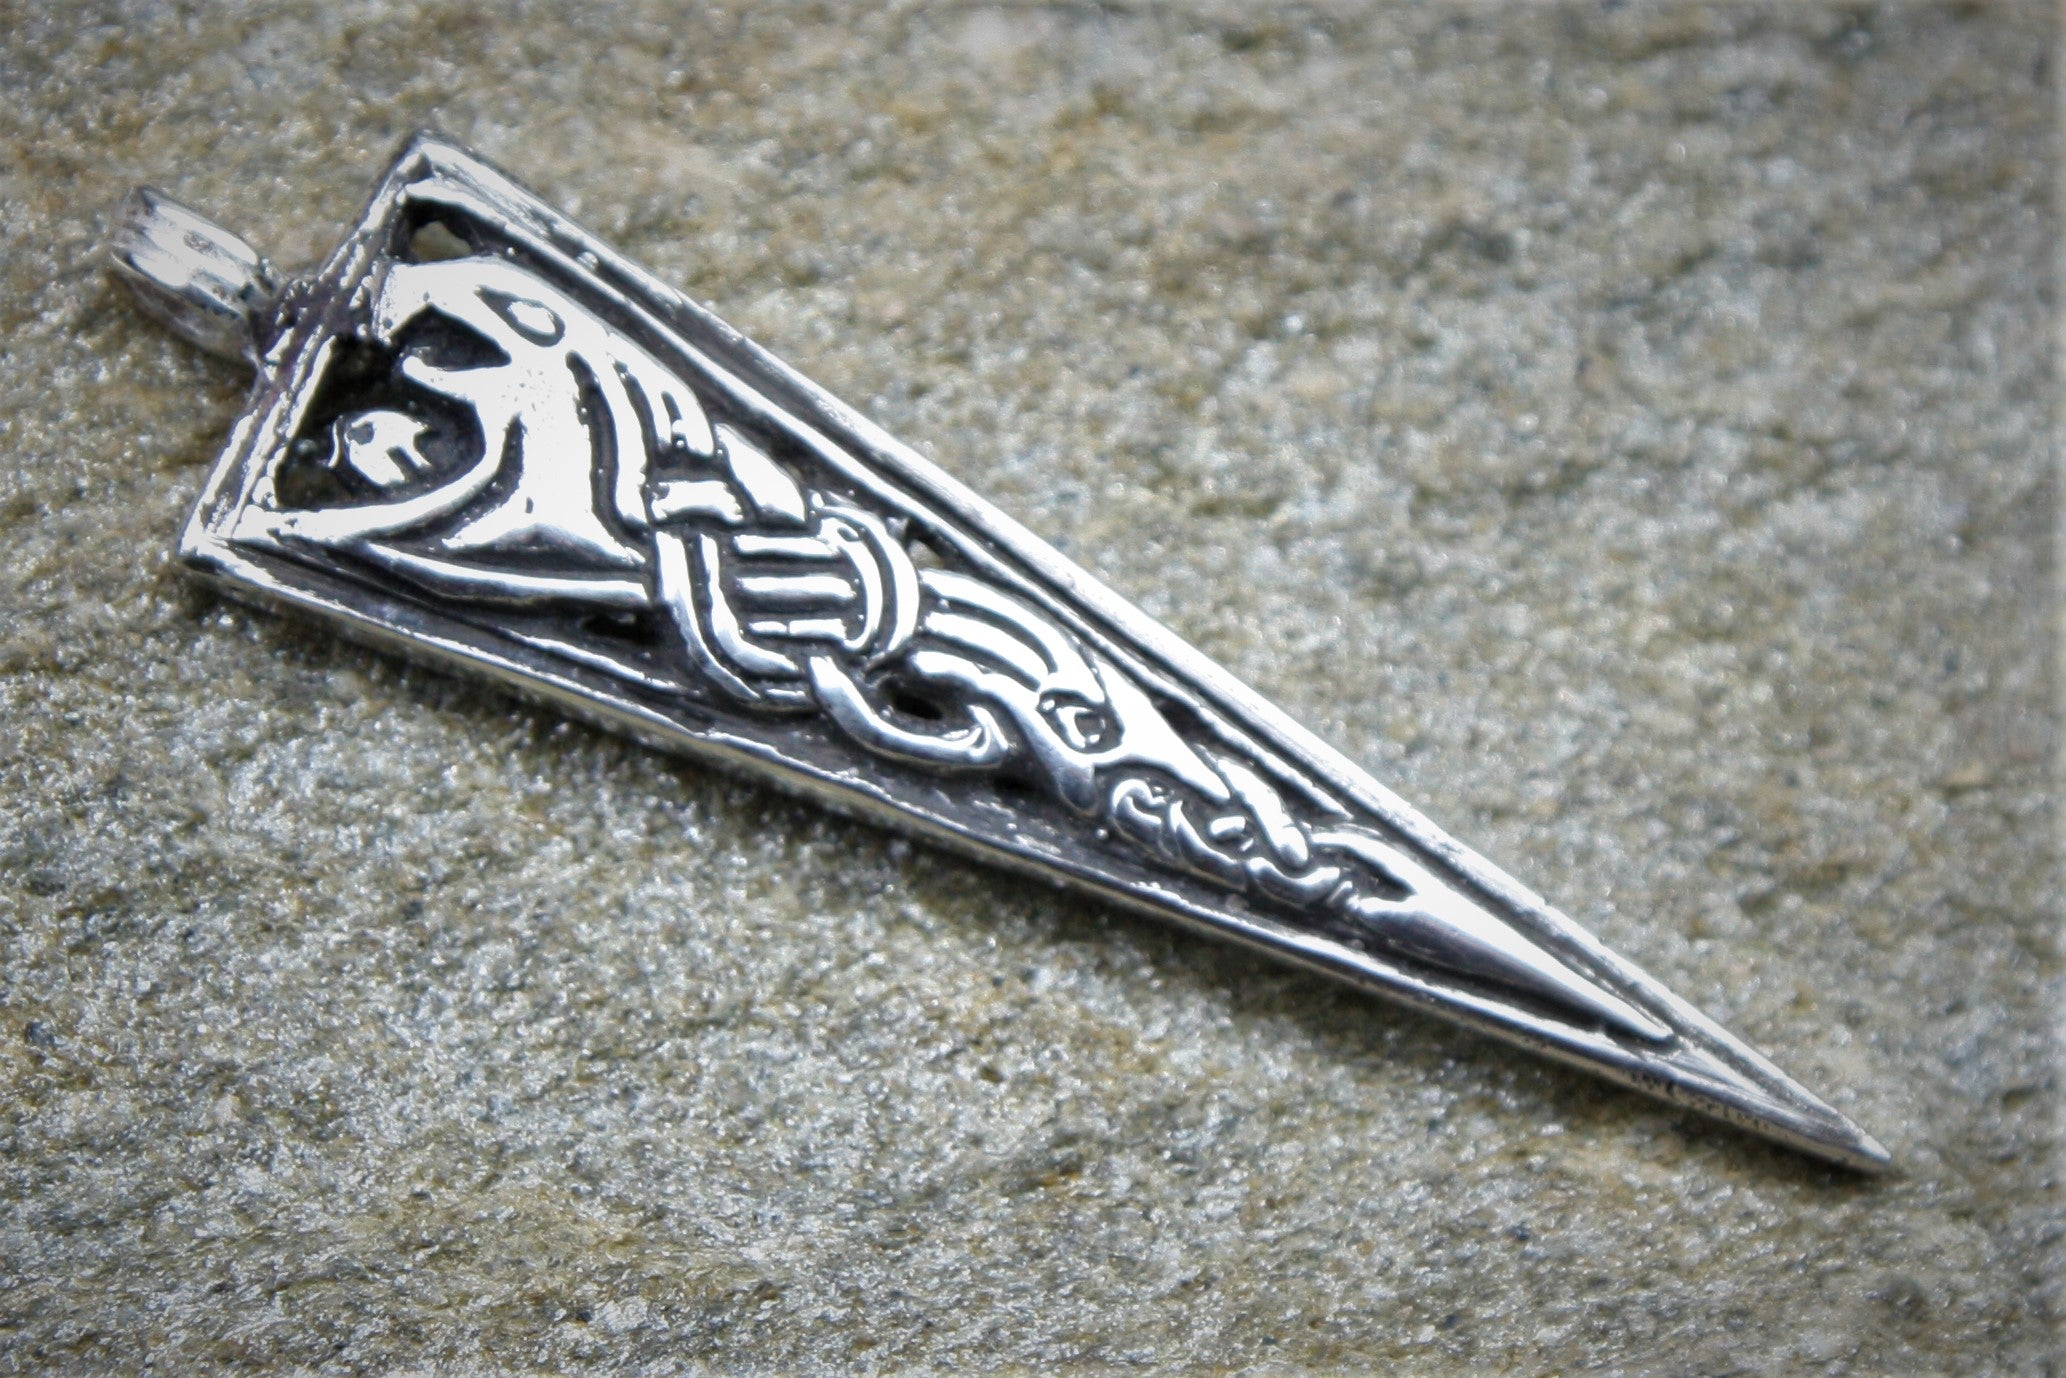 Viking dragon pendant